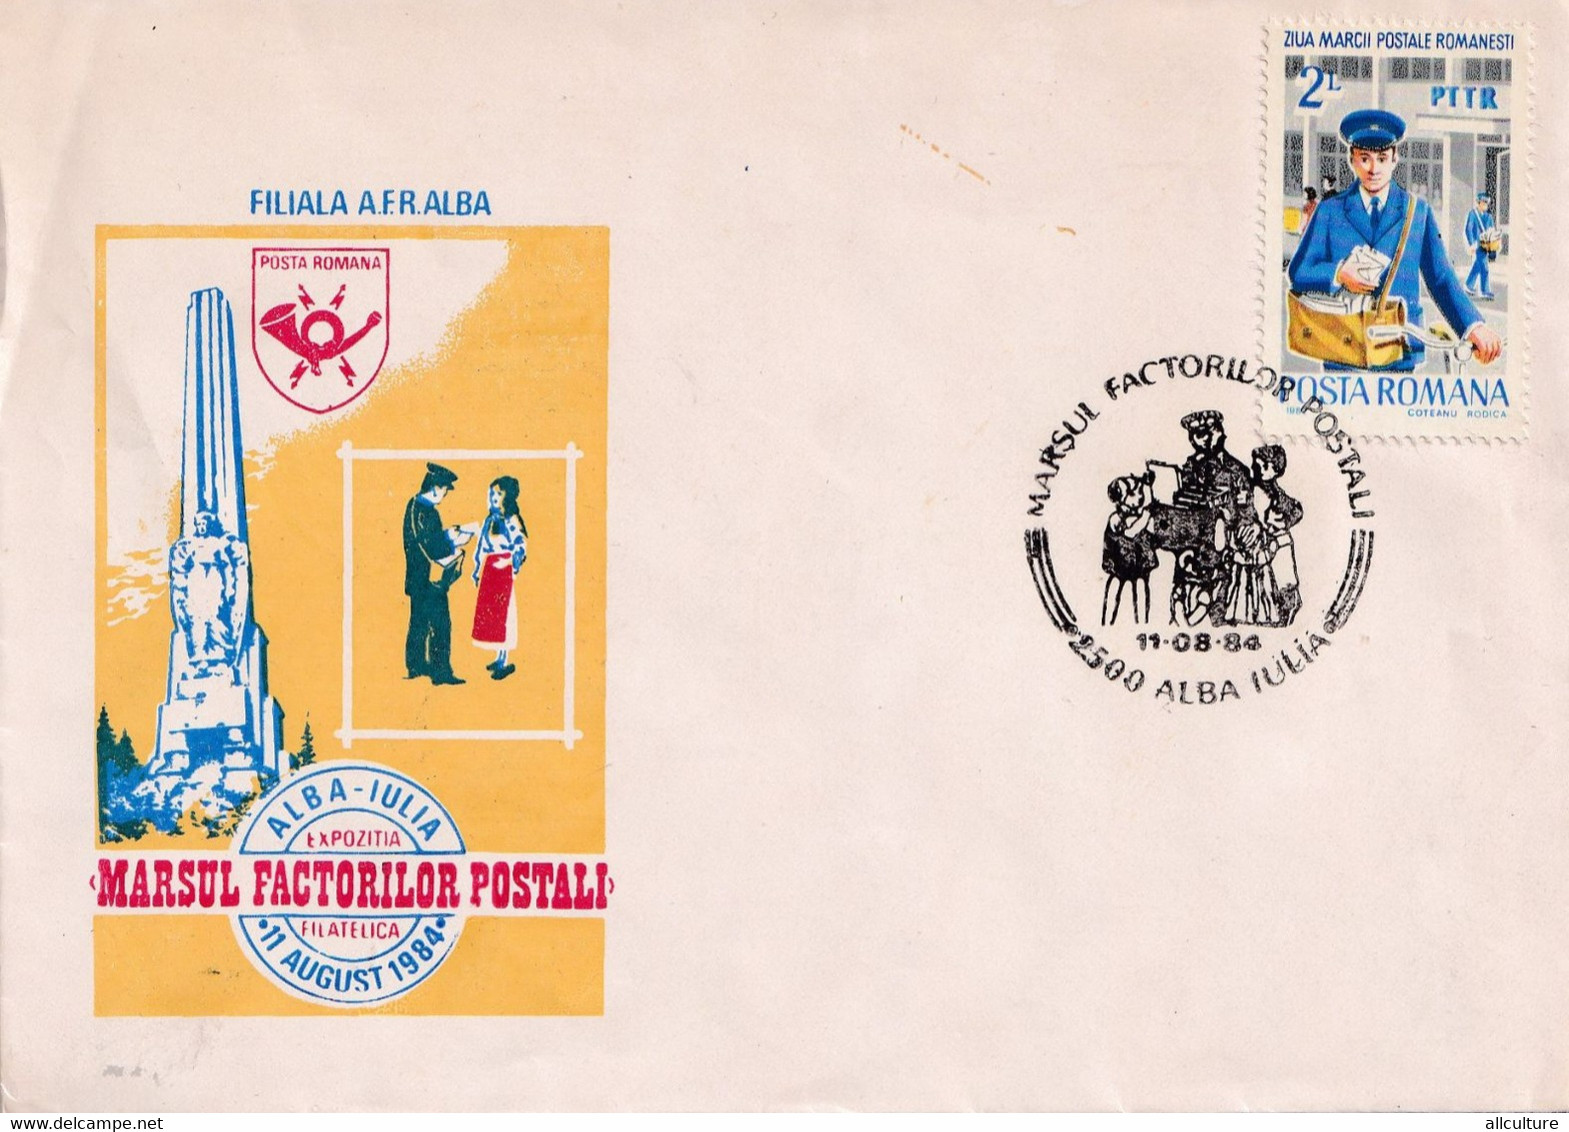 A2649 - Marsul Factorilor Postali, Alba Iulia Expozitia Filatelica 11 August 1984, Stamp Alba Iulia Romania 1984 - Briefe U. Dokumente